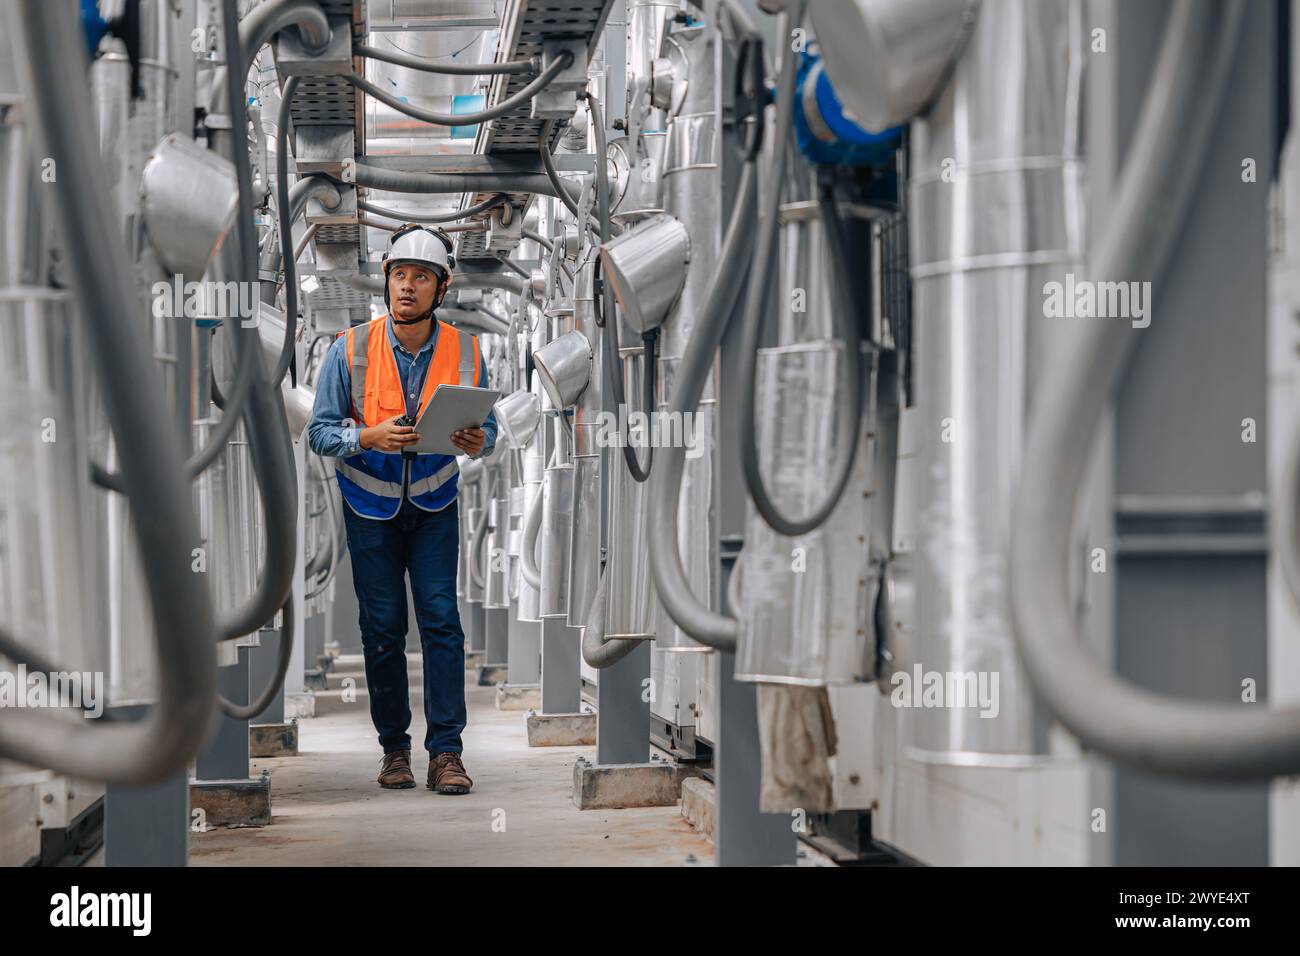 l'uomo in un giubbotto di sicurezza sta camminando attraverso un grande edificio industriale con tubi e fili. Ha un appunti che ispeziona l'area del gasdotto. Foto Stock